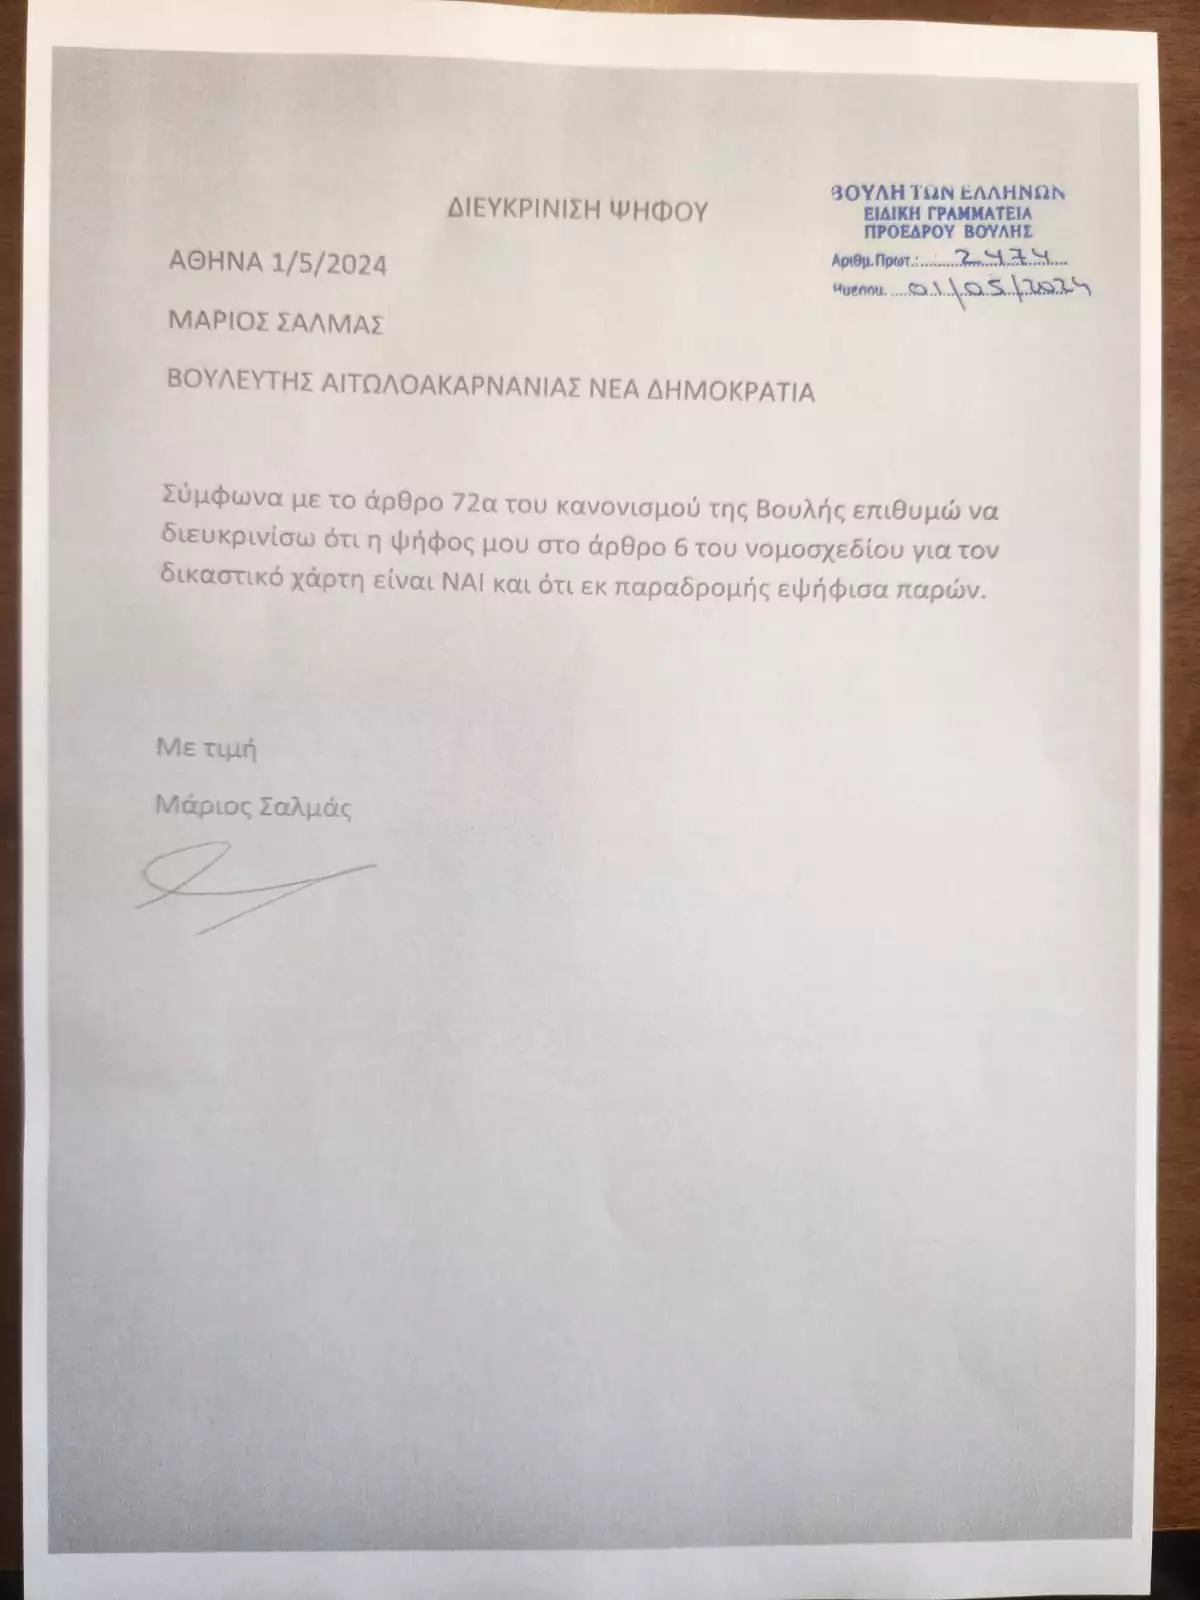 Ο βουλευτής Μάριος Σαλμάς ψήφισε «παρών» κατά λάθος για τον δικαστικό χάρτη